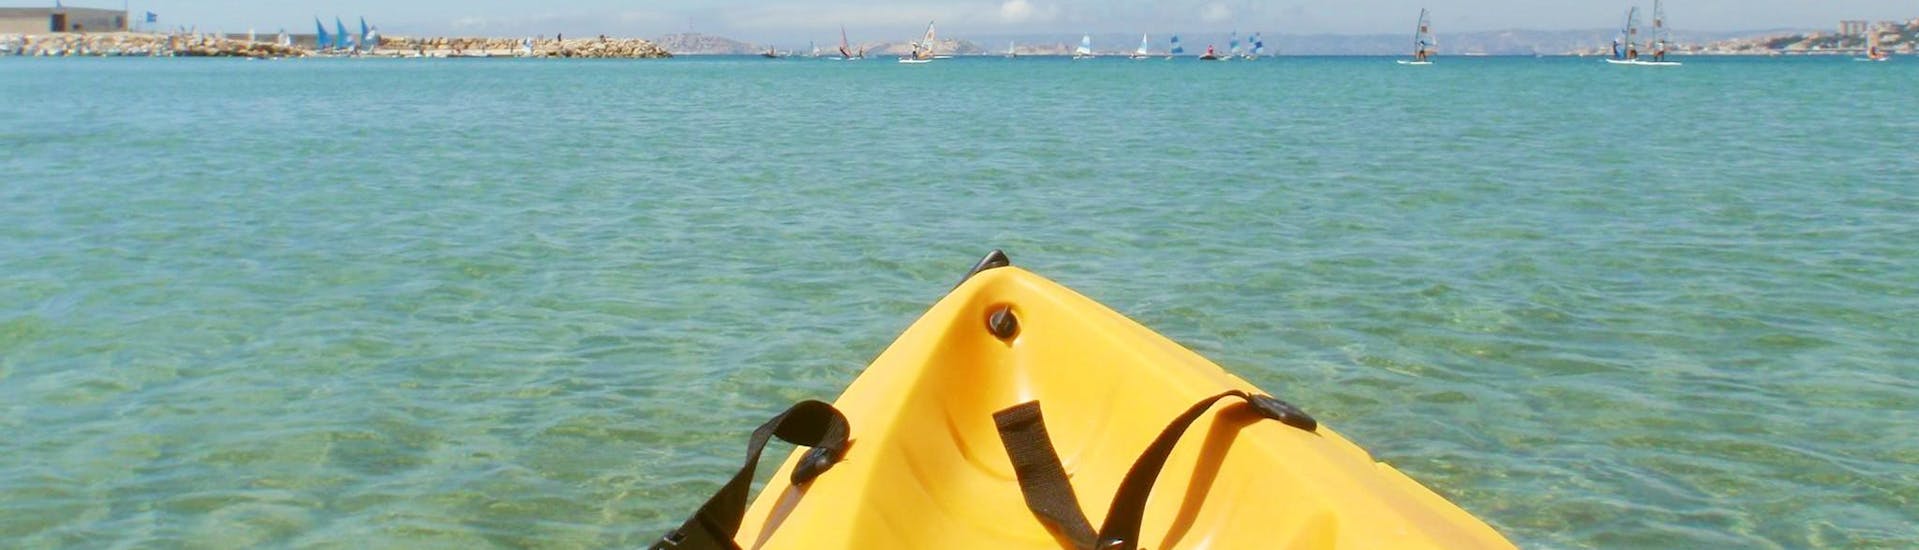 Kayak y piragua fácil en Marsella - Côte d'Azur (Costa Azul).